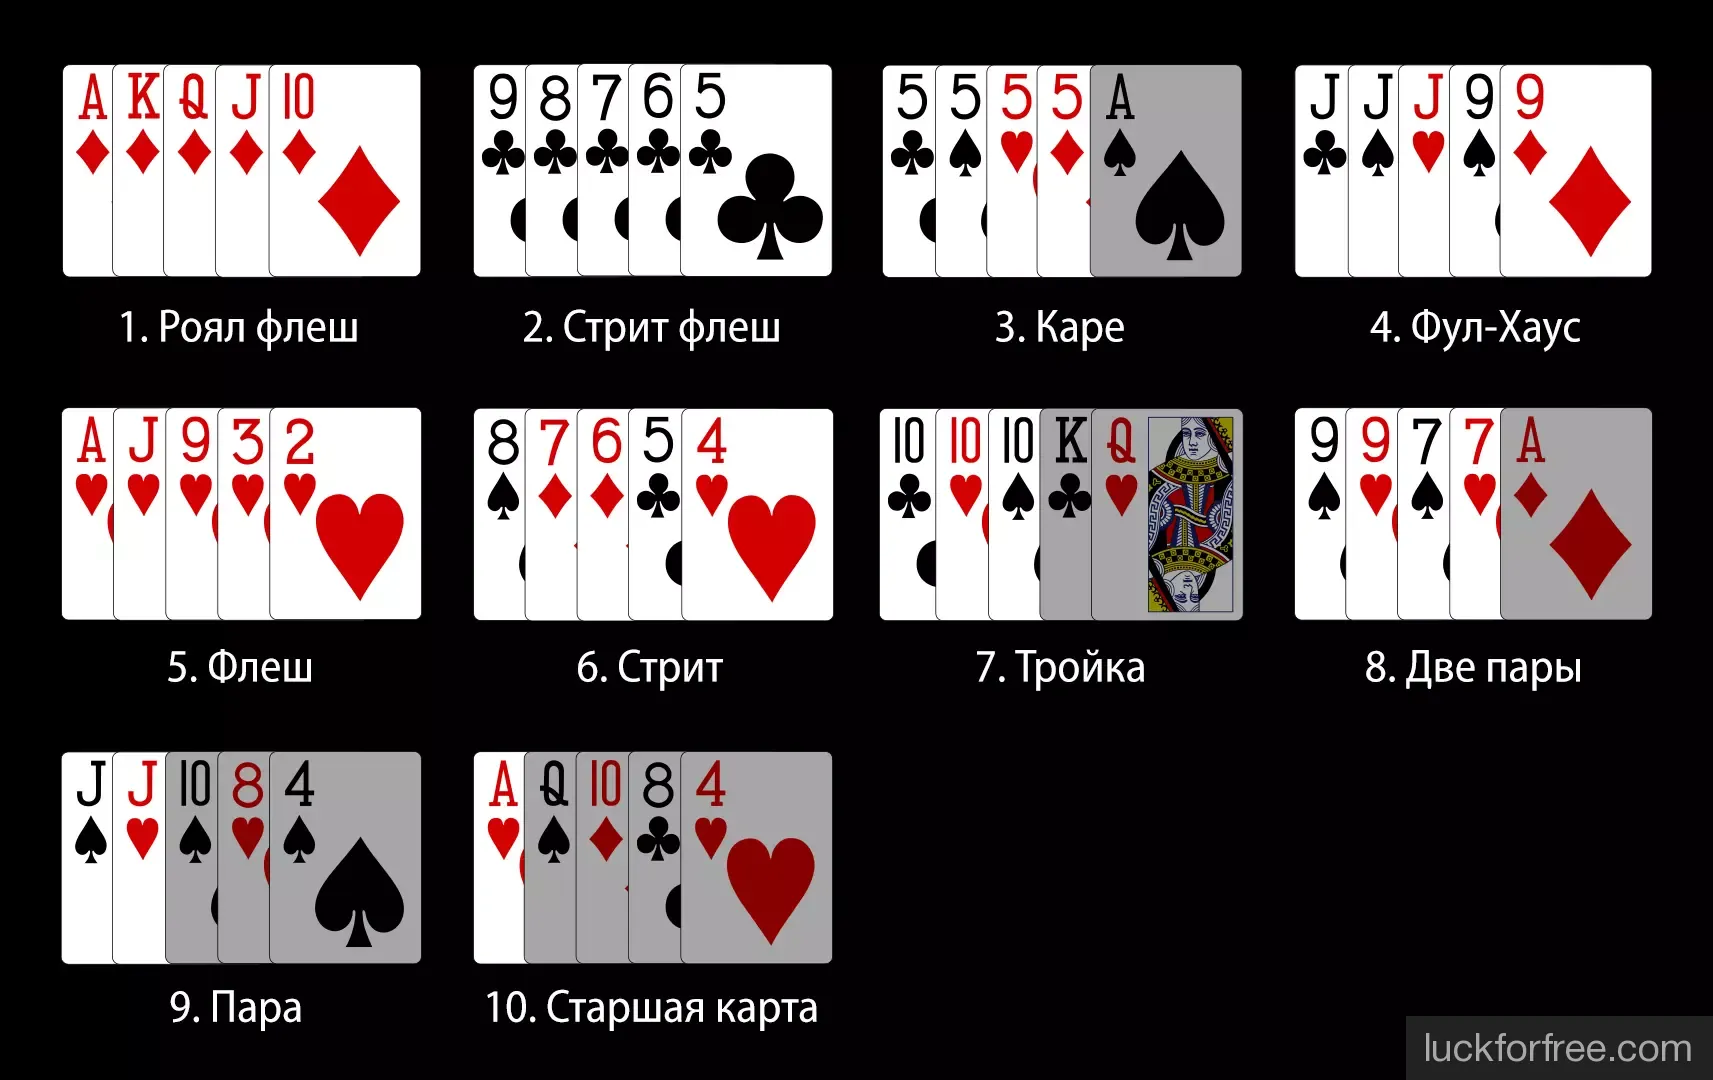 Играть бесплатно в русский покер карты мини покер онлайн играть